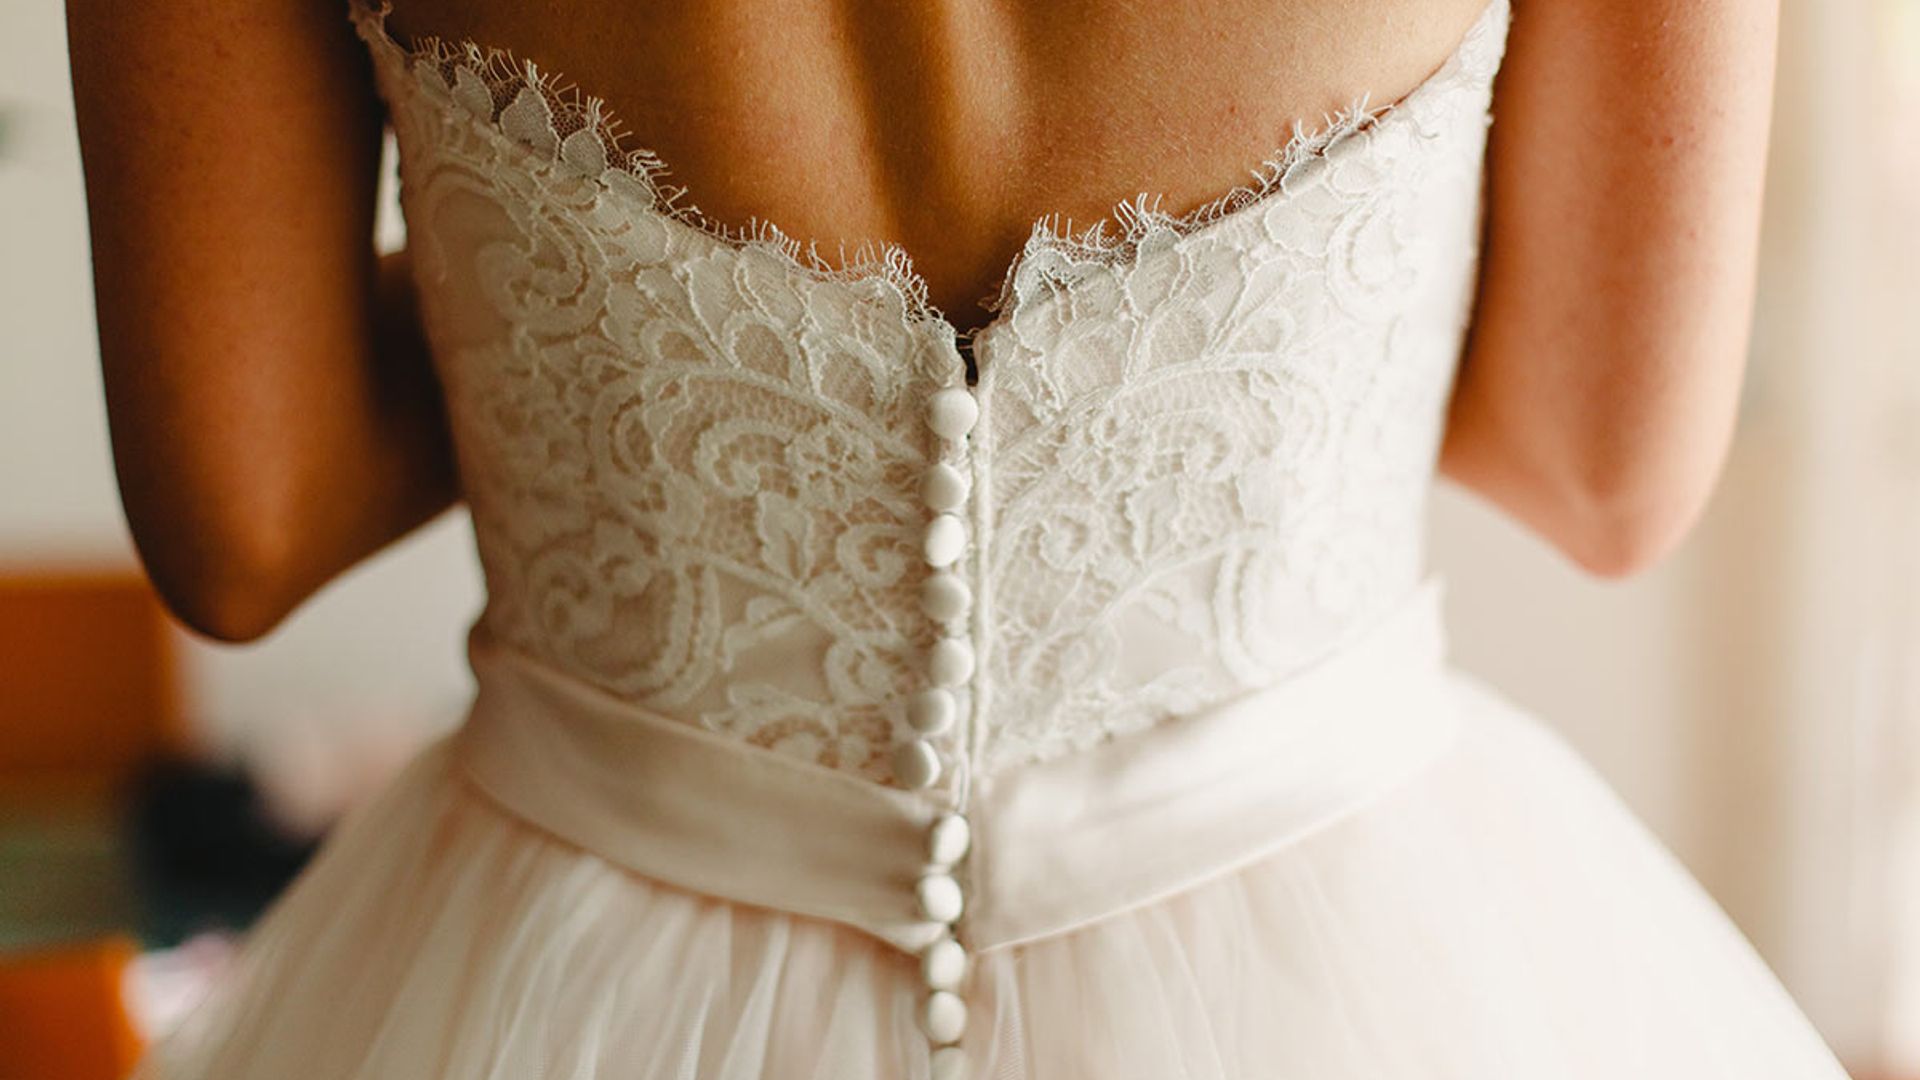 Wedding belt- pretty or pretty tacky?